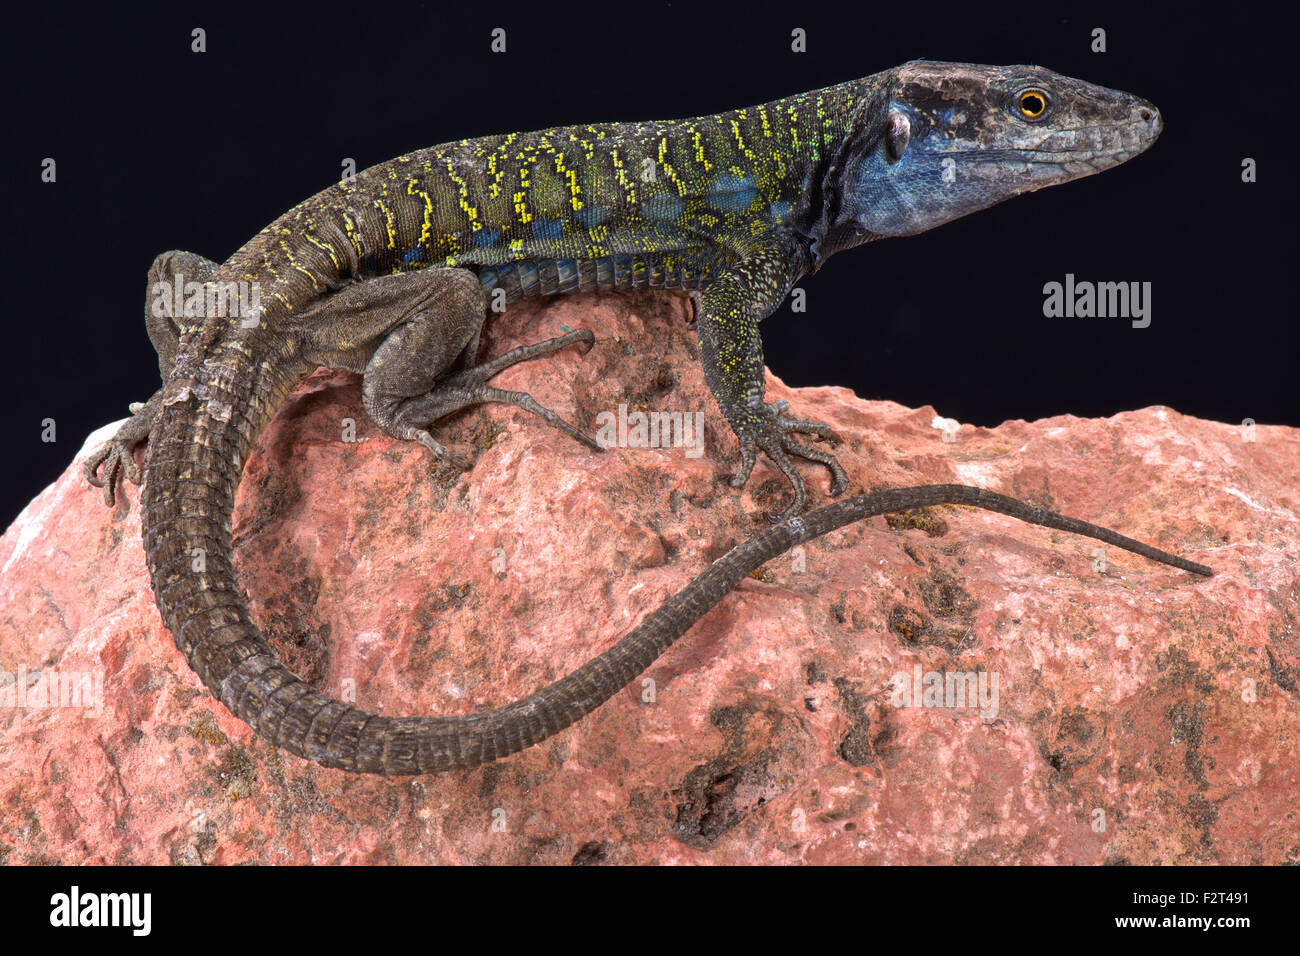 Northern Tenerife lizard ( Gallotia galloti eisentrauti) Stock Photo